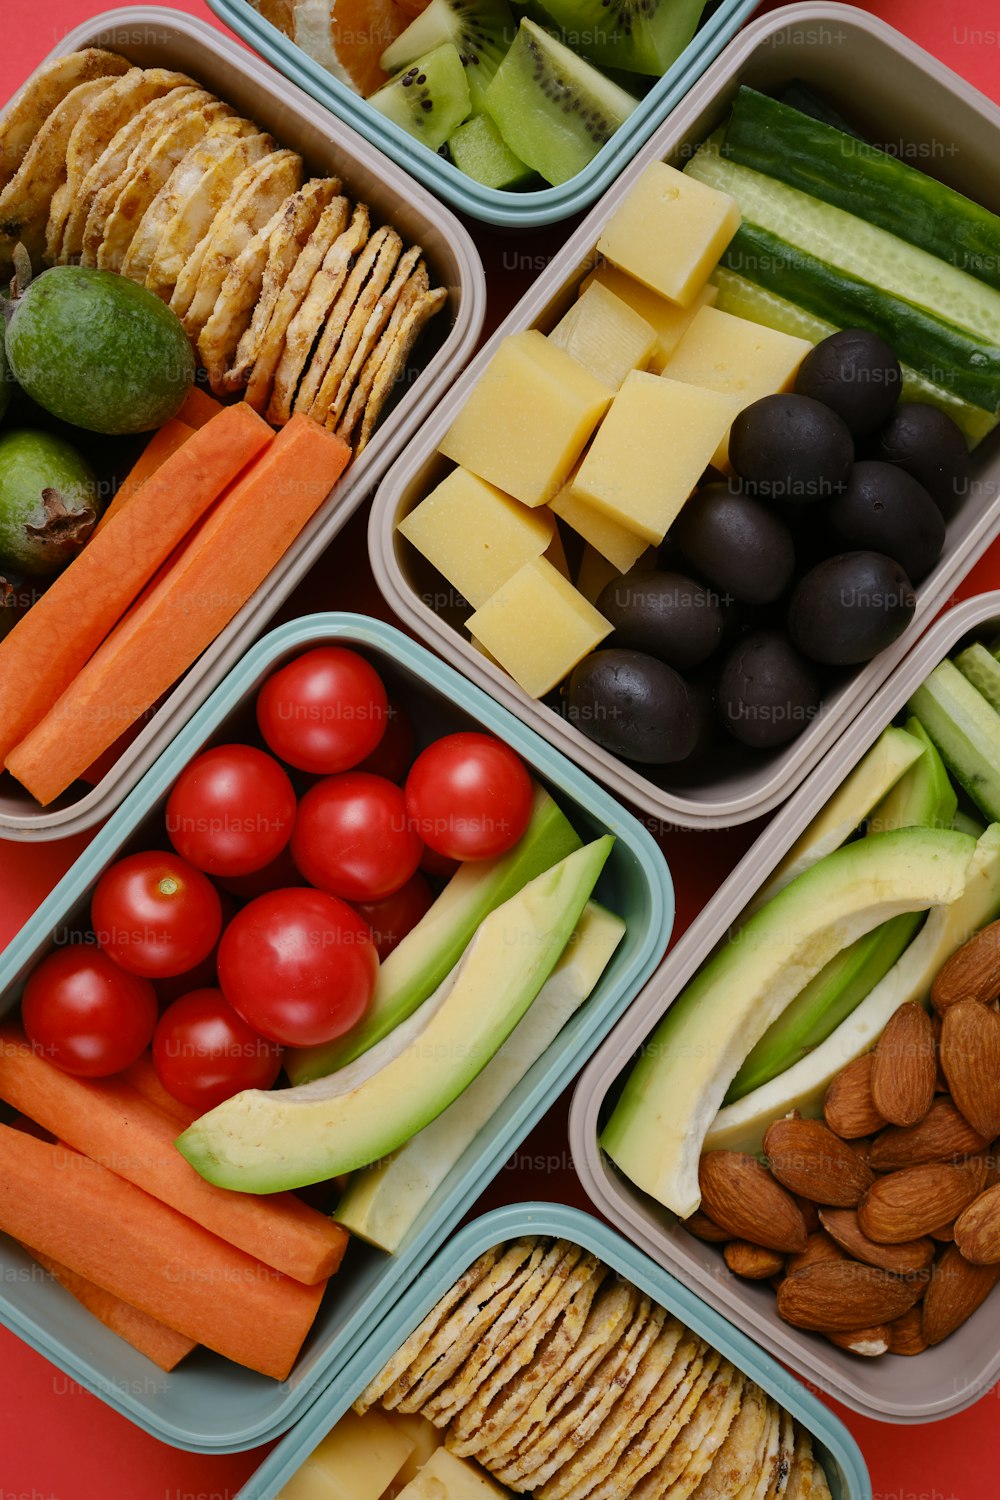 Un primer plano de una bandeja de comida con frutas y verduras